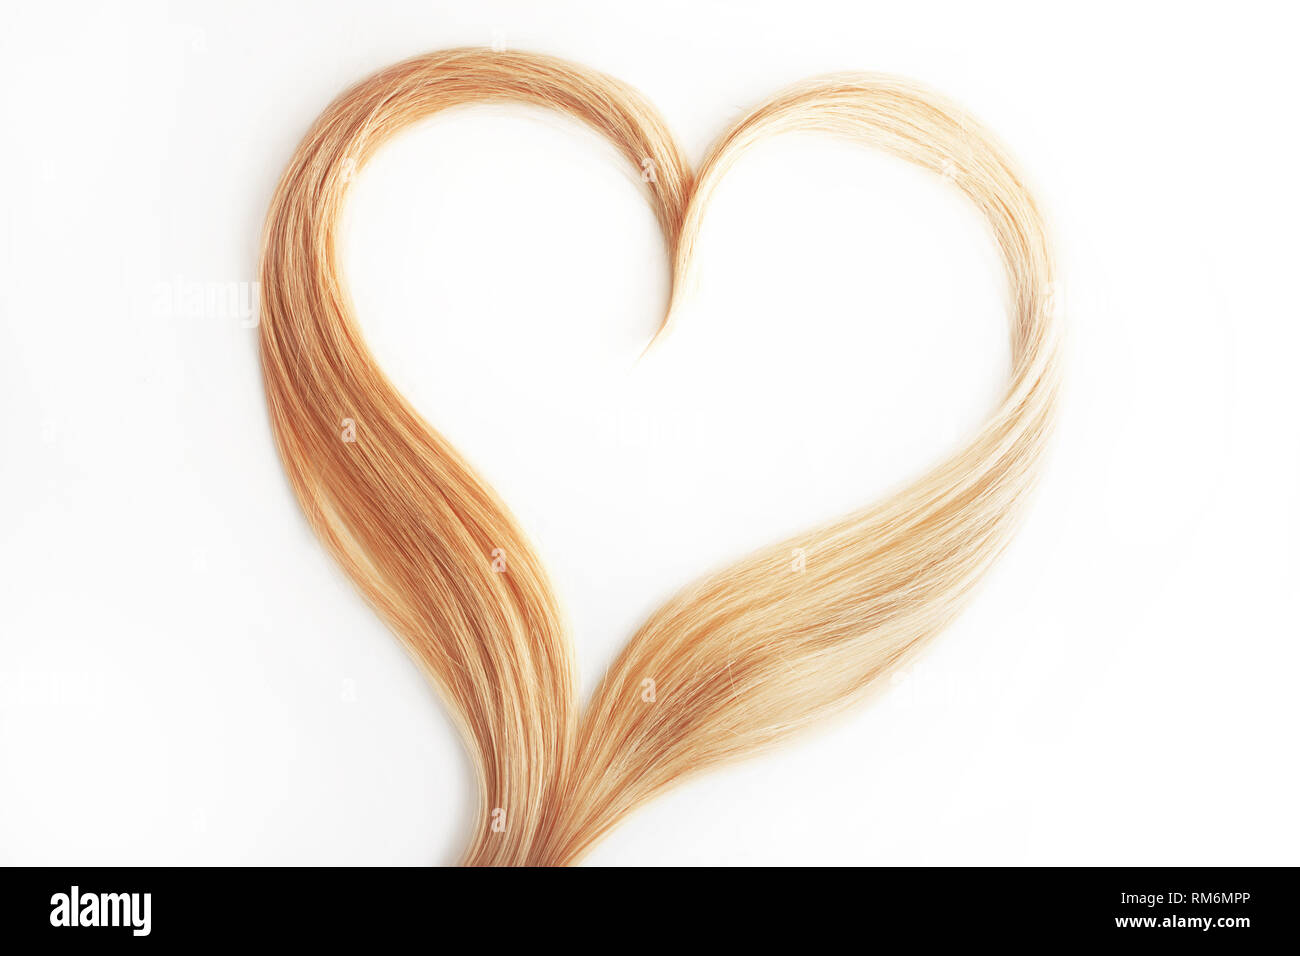 Ausrichtung des blonden Haares auf Weiß isoliert. Locken Haare in der Form eines Herzens, Gesundheit und Hair Care Konzept. Stockfoto